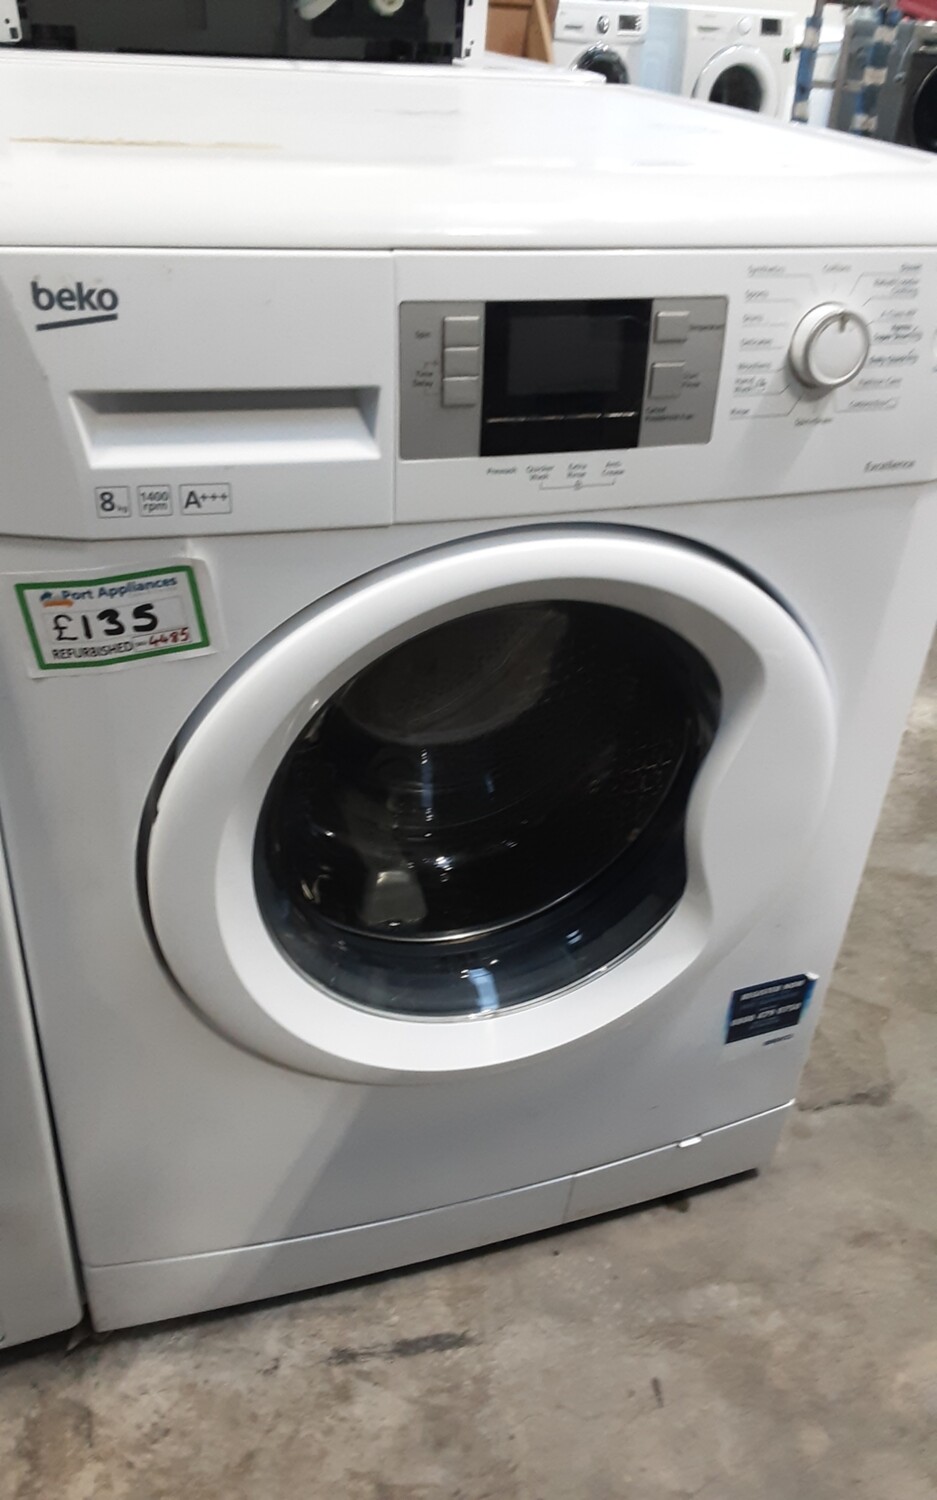 Beko ECOWMB81445LW 8kg Load 1400 Spin Washing Machine - White - Refurbished - 6 Month Guarantee